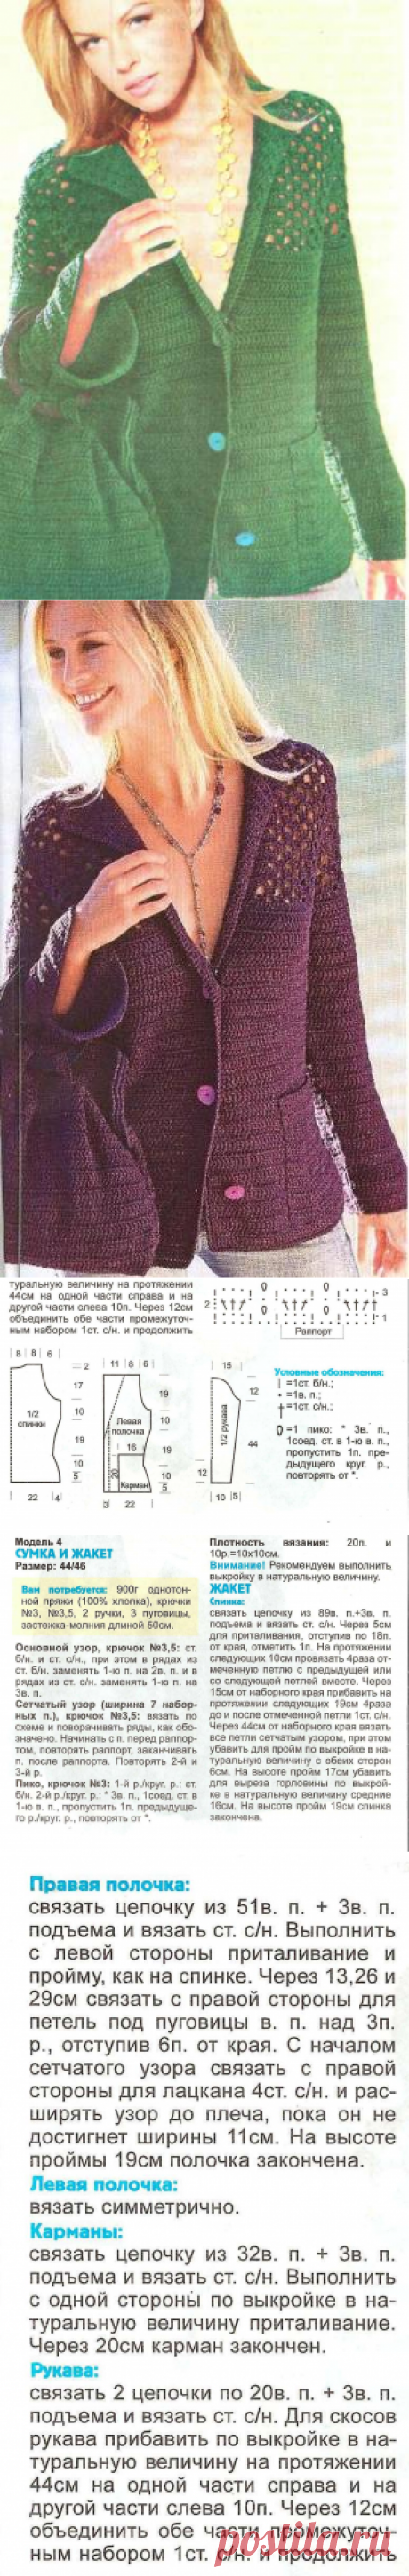 1091 - жакети, блейзери, кардігани - В'язання для жінок - Каталог статей - Md.Crochet